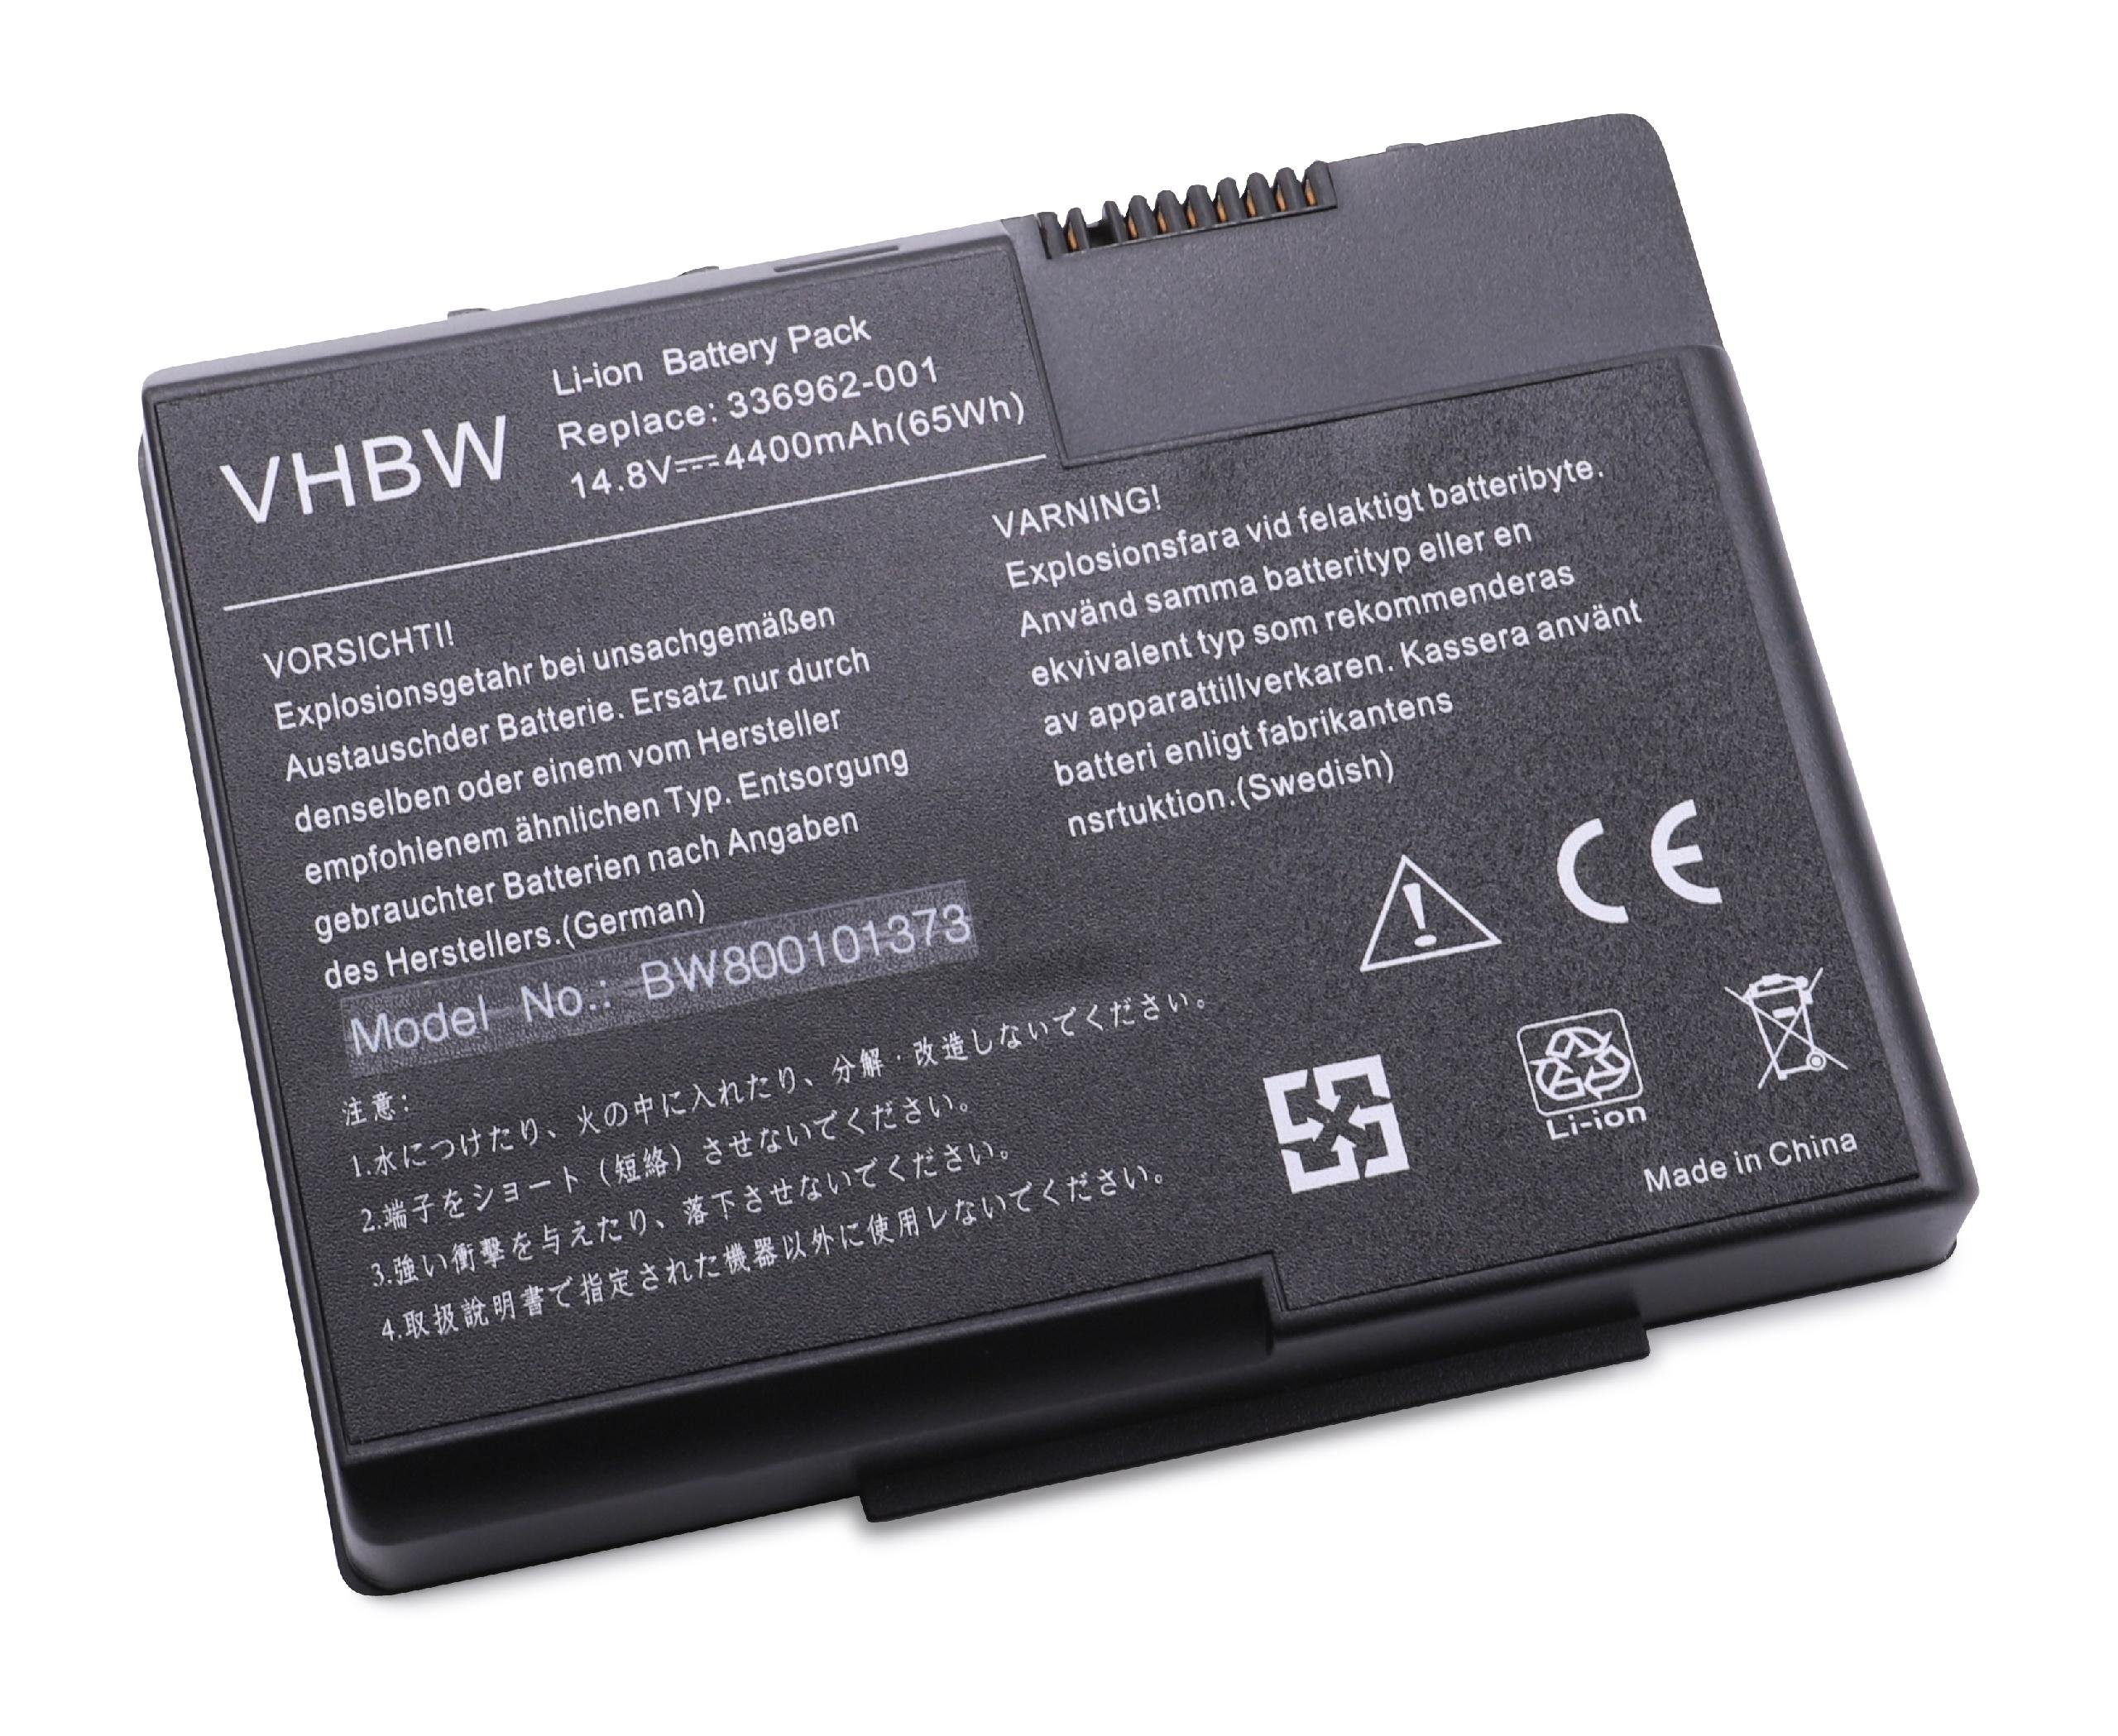 vhbw passend für HP Pavilion zt3302US (PF086UA), zt3302US (PF086UAR), Laptop-Akku 4400 mAh